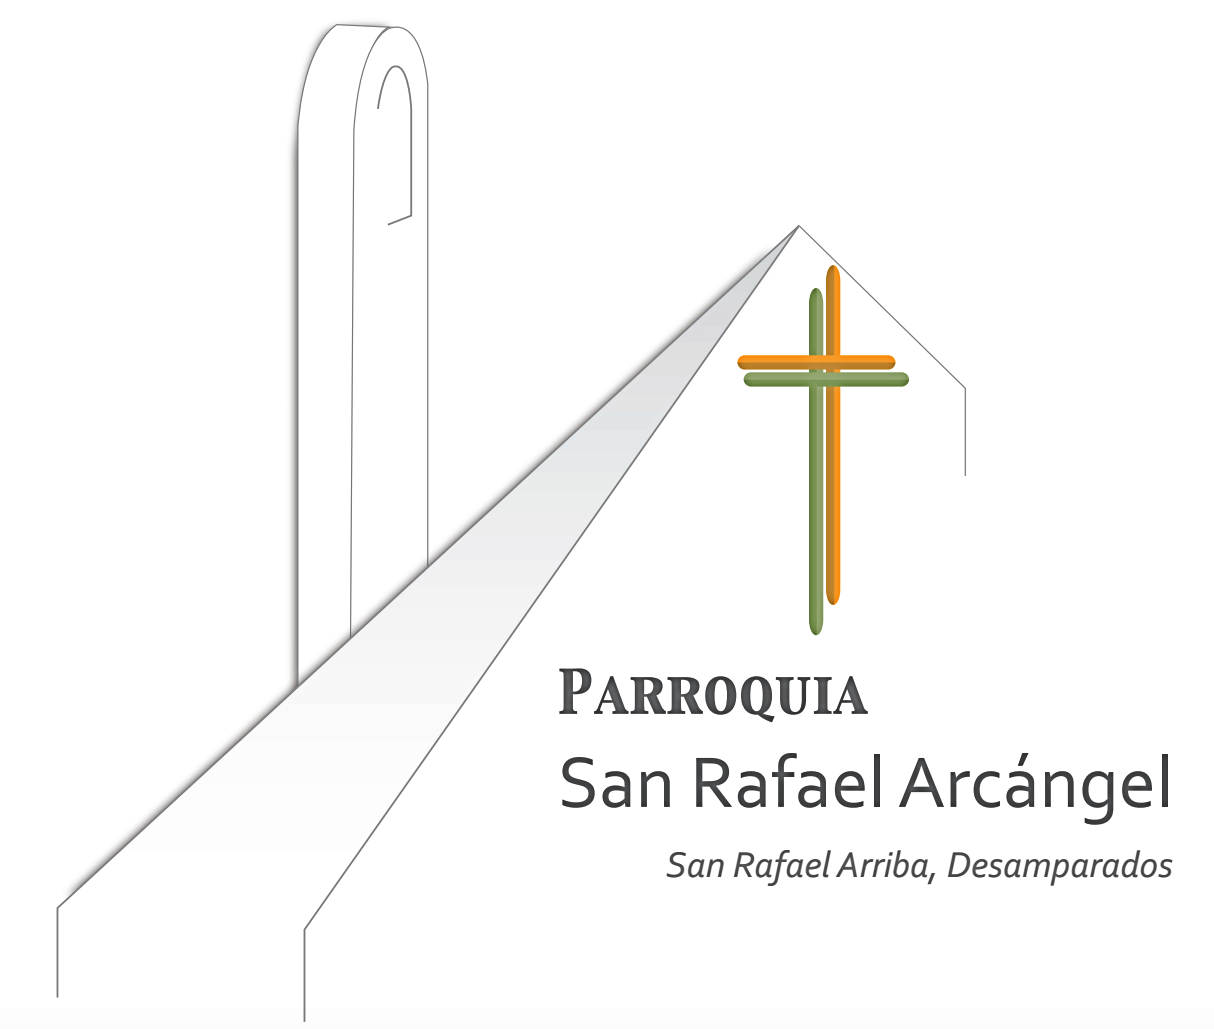 Parroquia San Rafael Arcángel